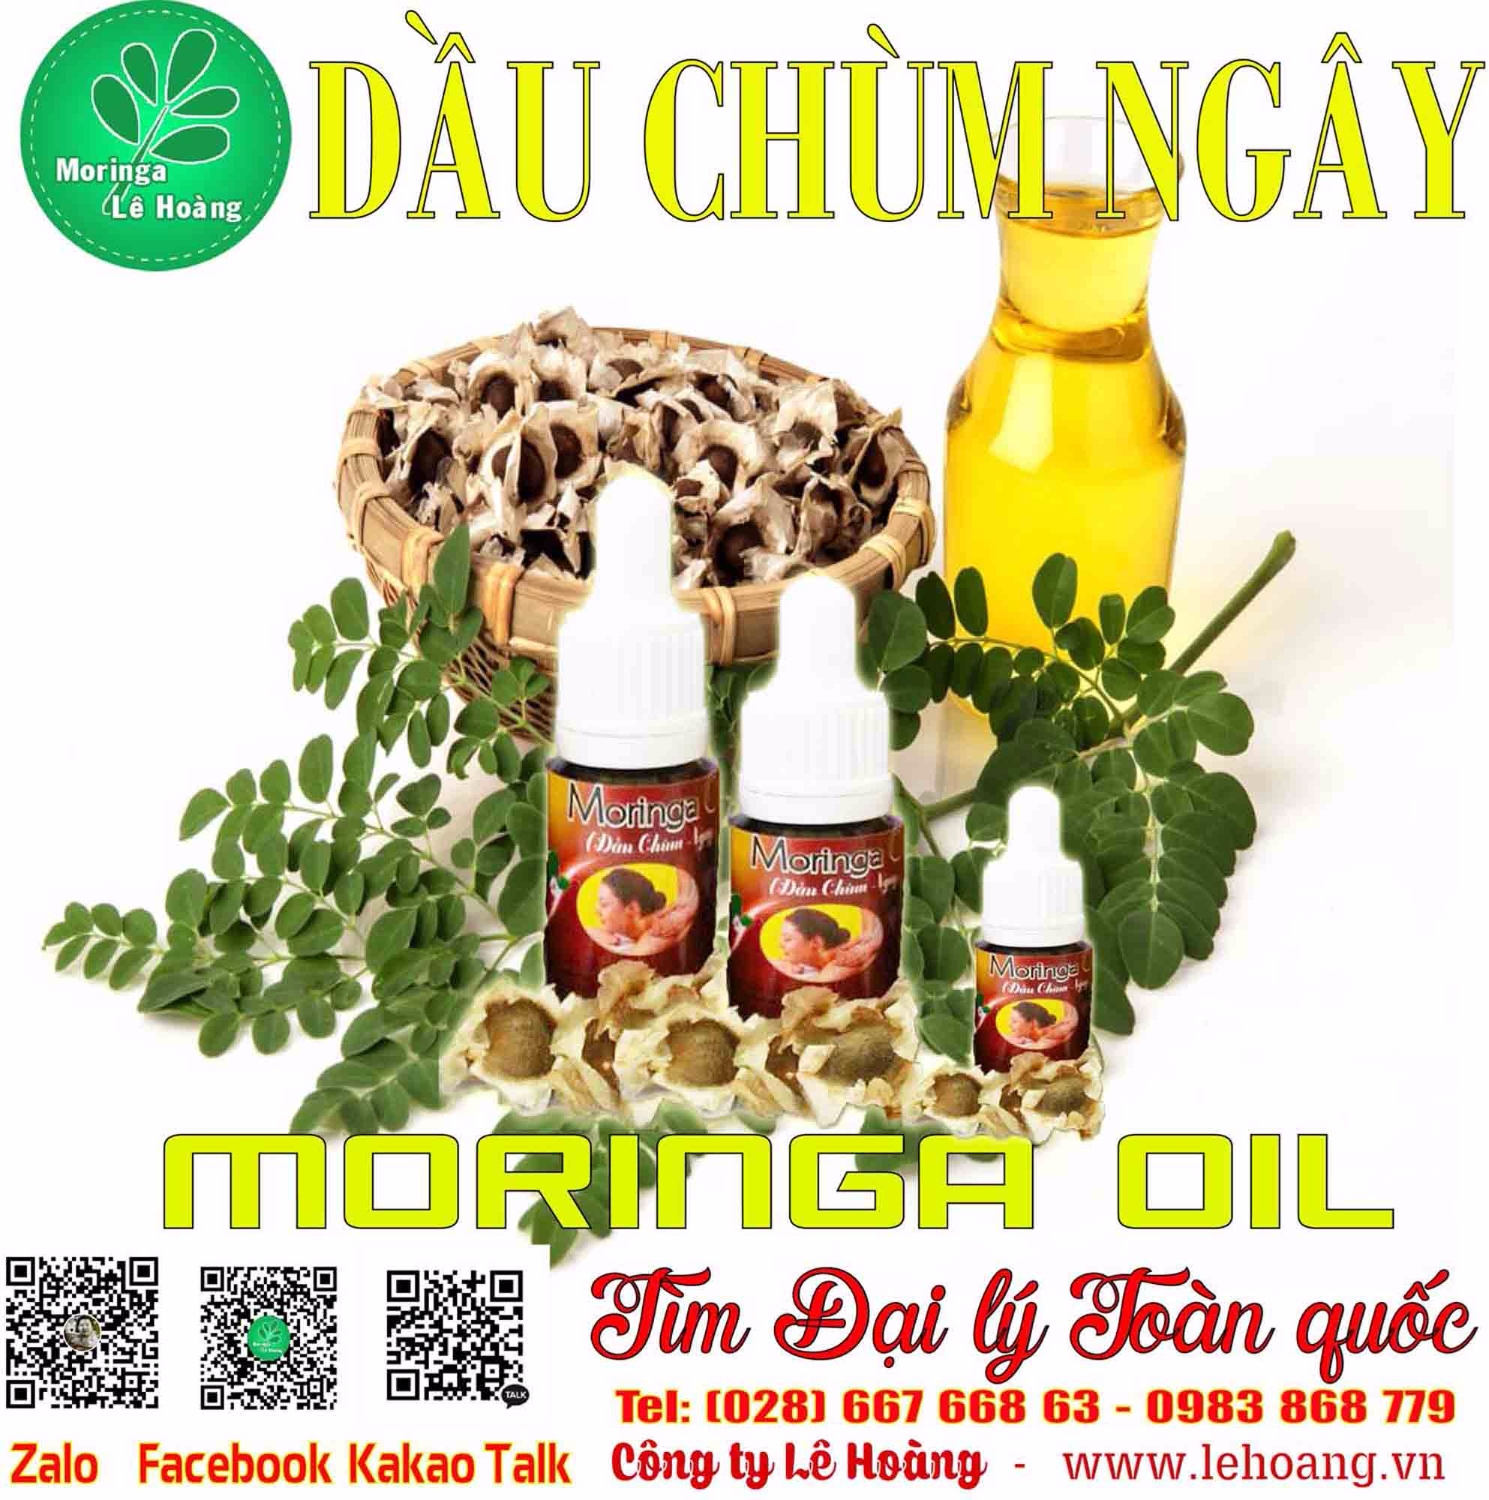 Dầu Chùm ngây (Moringa Seed Oil)